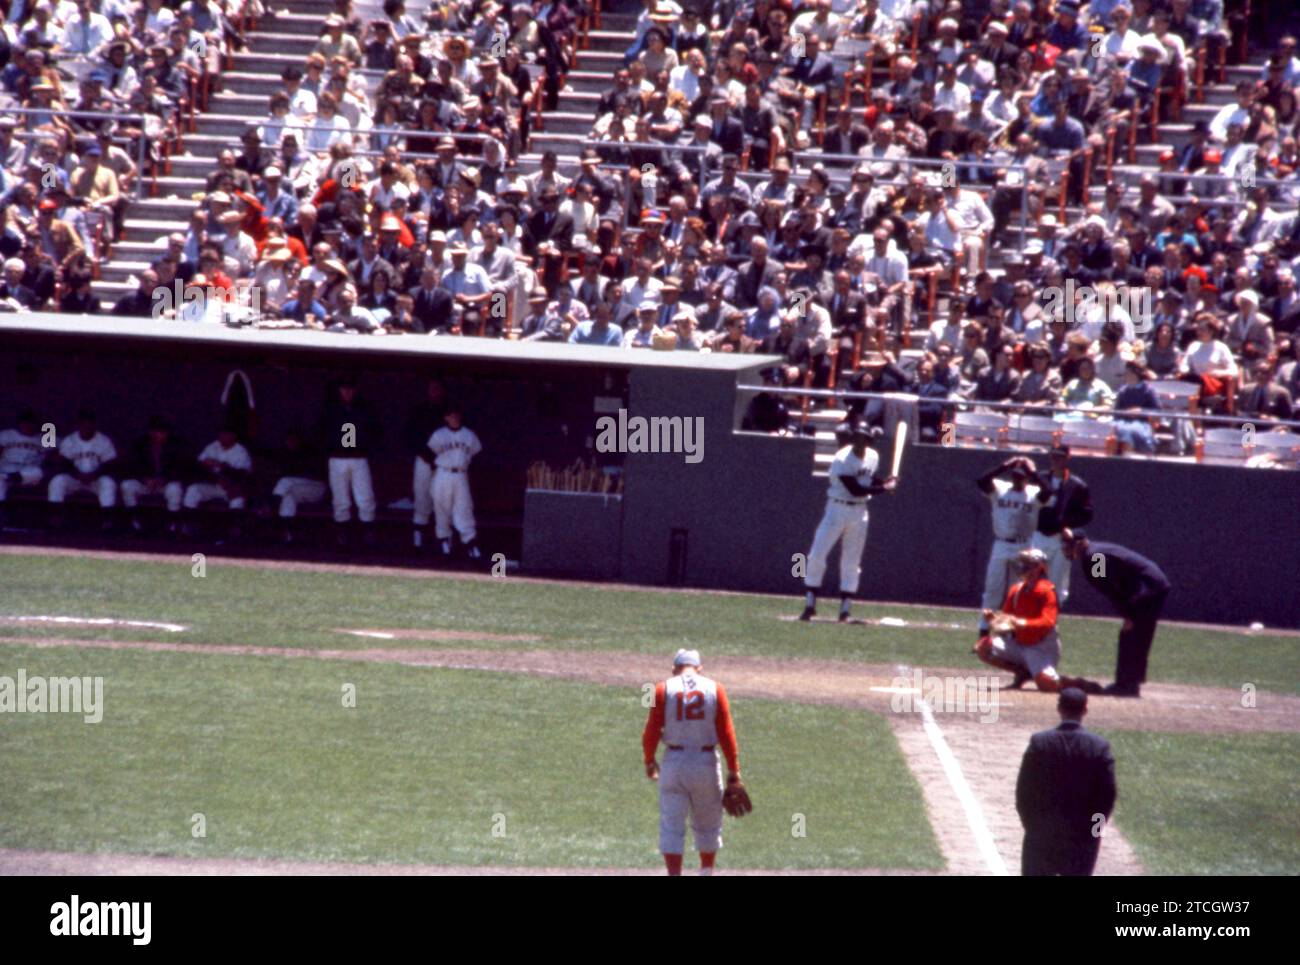 SAN FRANCISCO, CA - 30 MAI : Willie Mays #24 des Giants de San Francisco attend sur le pont alors que le receveur Jerry Zimmerman #8 des Reds de Cincinnati réchauffe le nouveau lanceur lors d'un match MLB le 30 mai 1961 au Candlestick Park à San Francisco, Californie. Le troisième joueur de base des Reds est Gene Freese #12 et le troisième arbitre de base est Frank Secory. (Photo de Hy Peskin) *** Légende locale *** Jerry Zimmerman;Gene Freese;Willie Mays;Frank Secory Banque D'Images